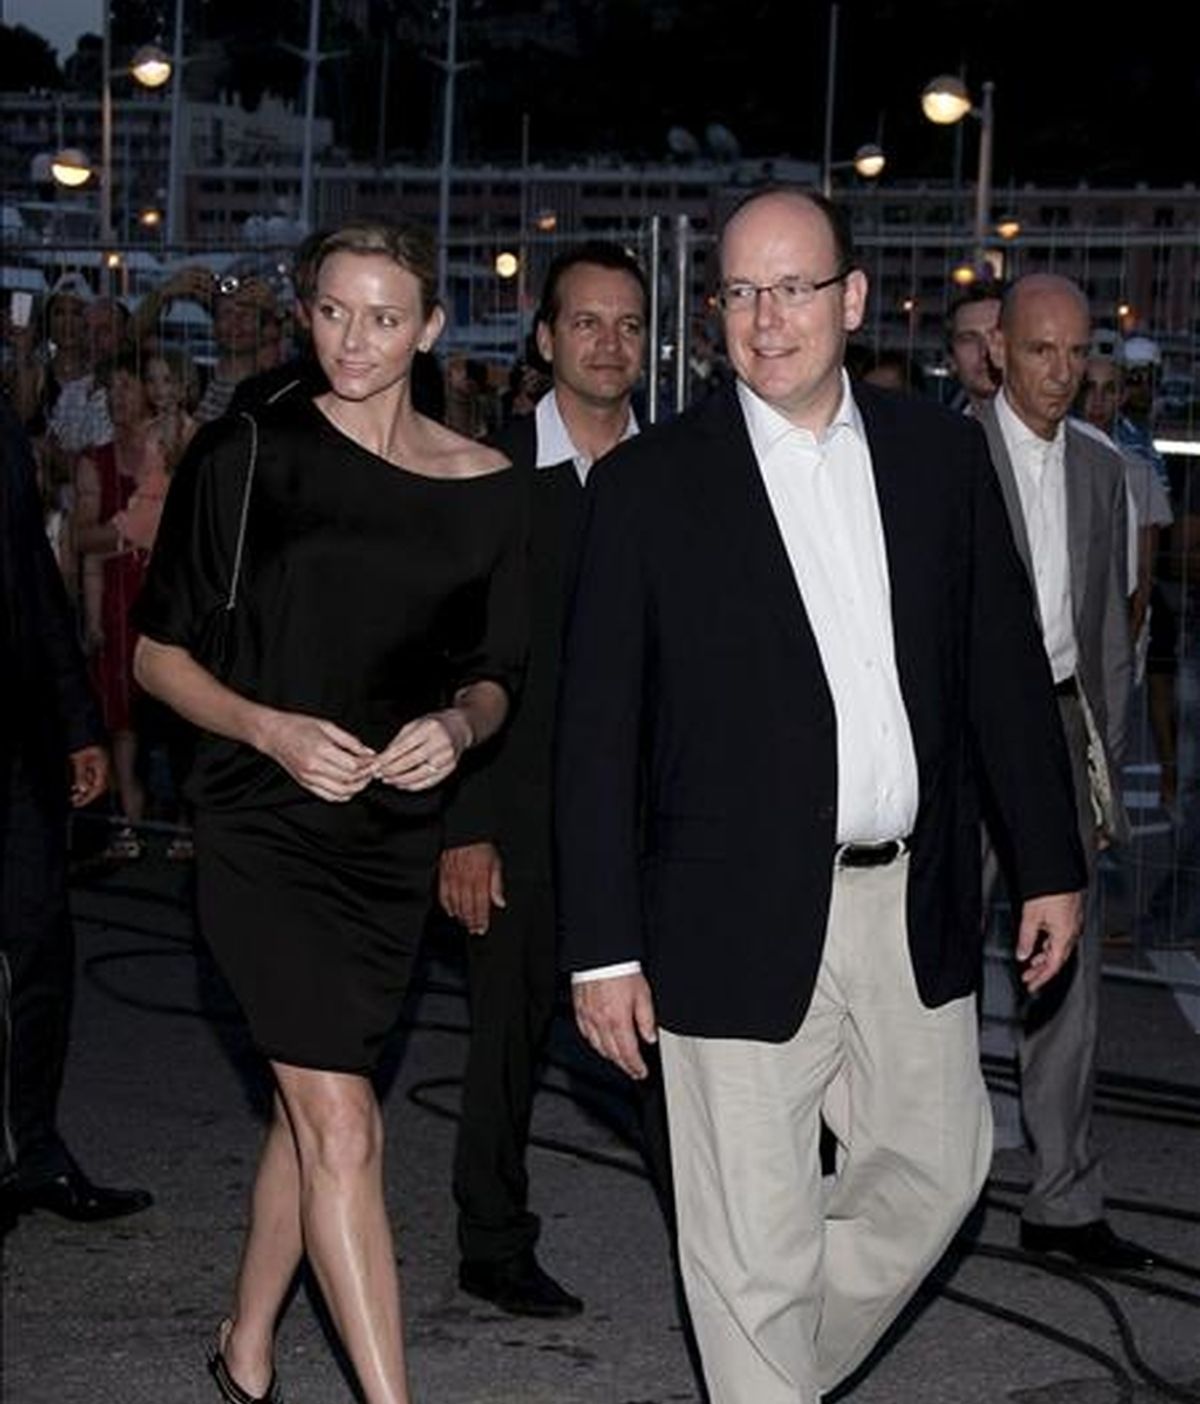 El príncipe Alberto II de Mónaco (d) y su prometida, Charlene Wittstock, asisten a la cena de gala 'Dinner in the Sky' (Cena en el cielo), en Mónaco, el pasado 12 de julio. EFE/Archivo